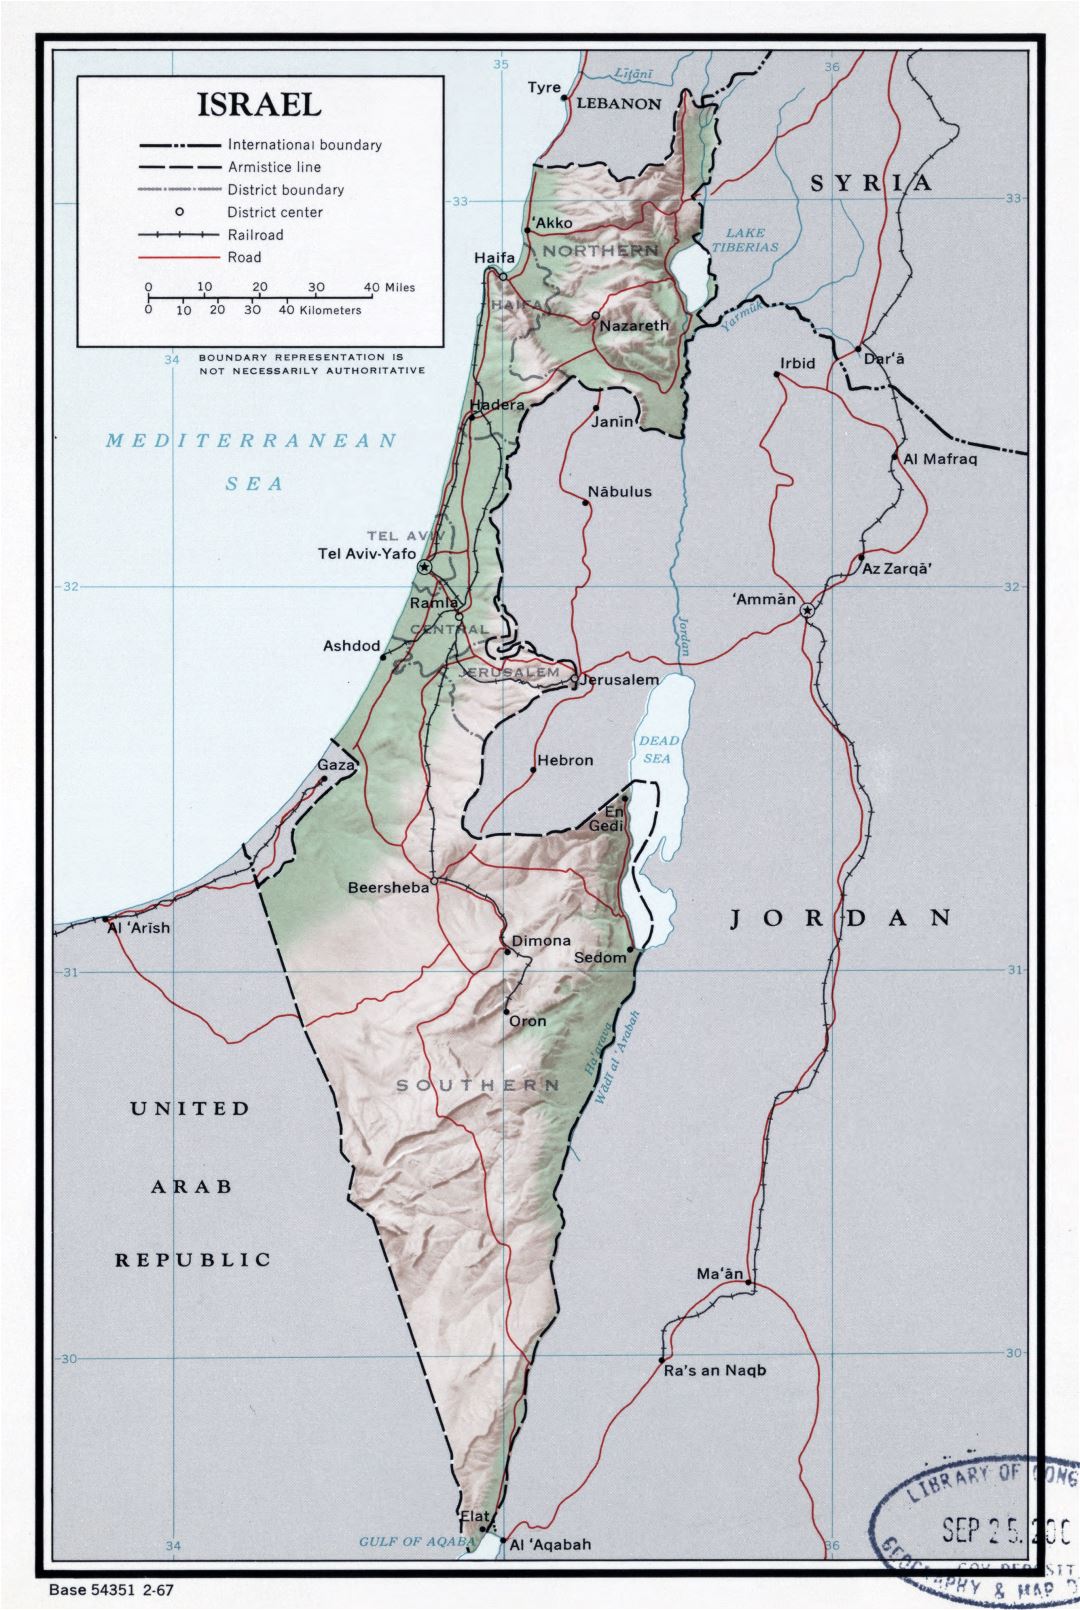 Grande detallado mapa político y administrativo de Israel con socorro, carreteras, ferrocarriles y principales ciudades - 1967